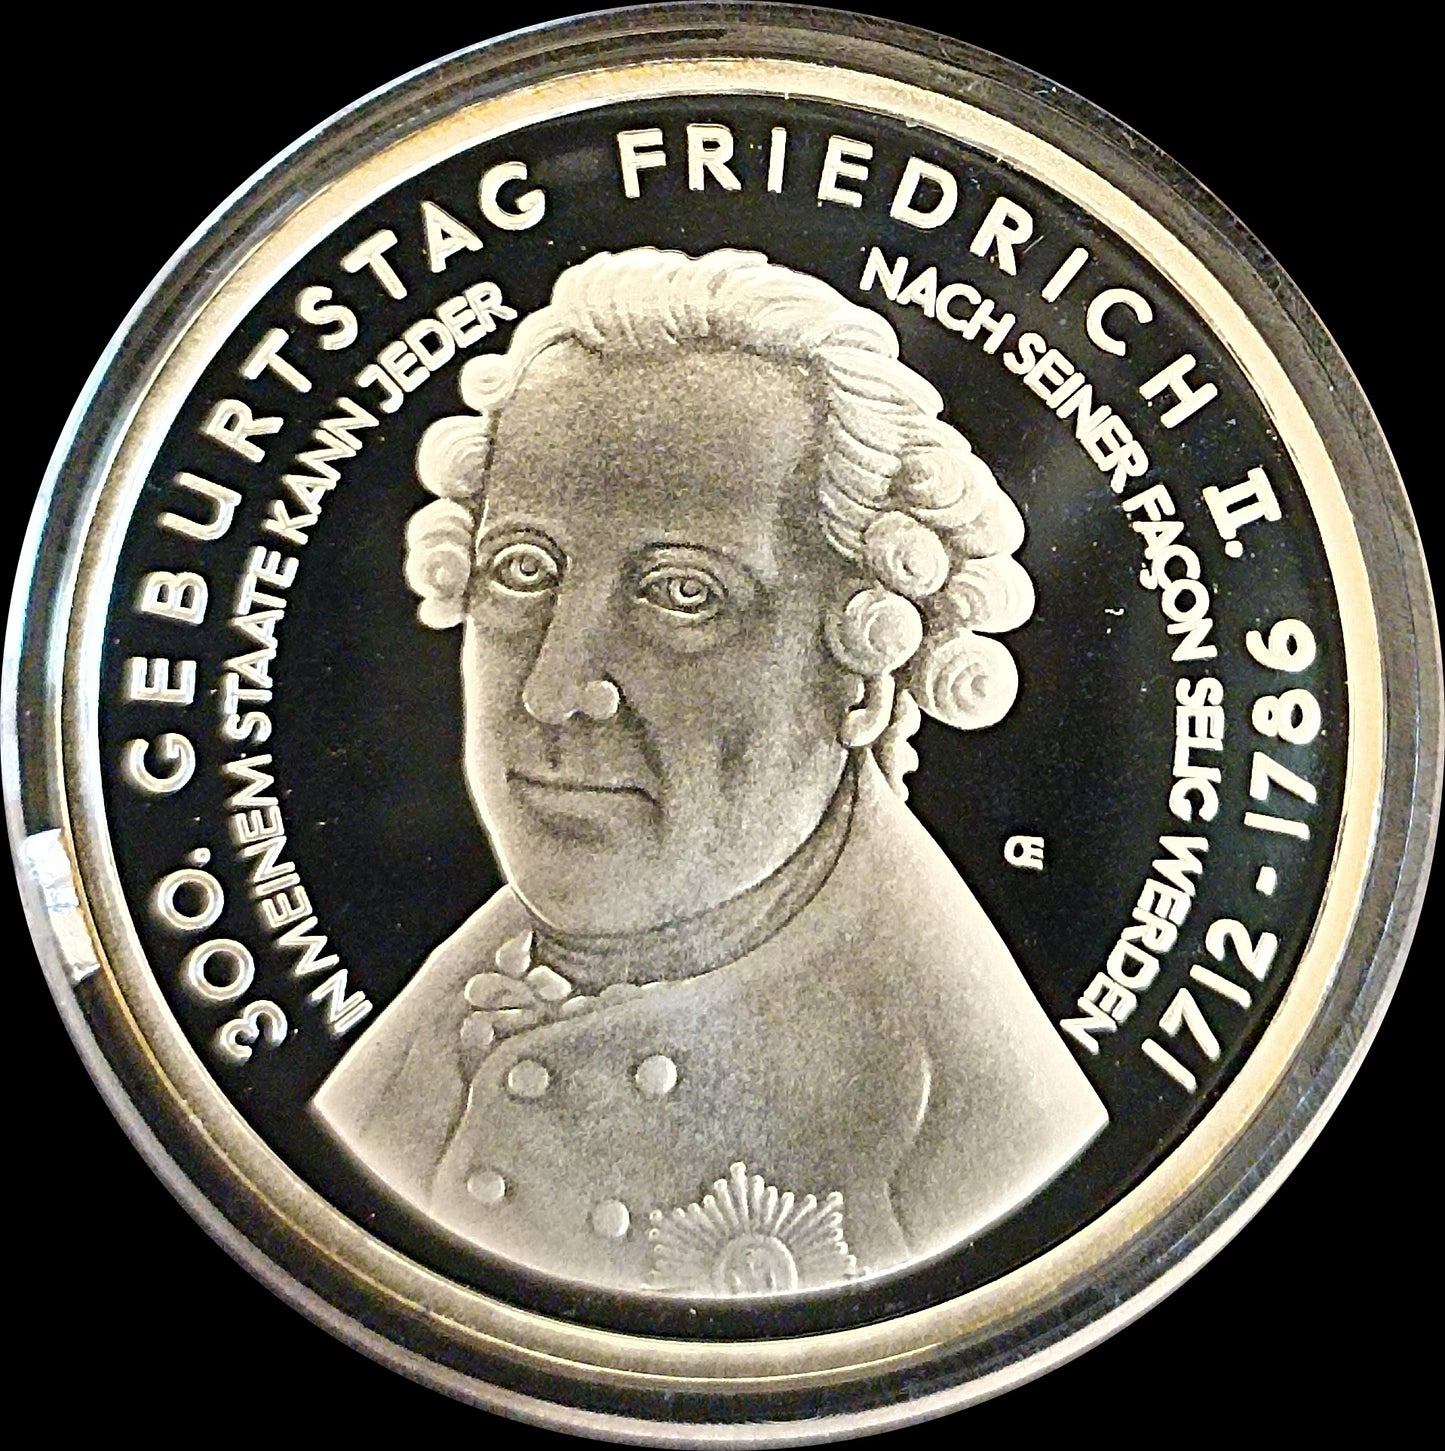 300. GEBUTRSTAG FRIEDRICH II, Serie 10 € Silber Gedenkmünzen Deutschland, Spiegelglanz, 2011